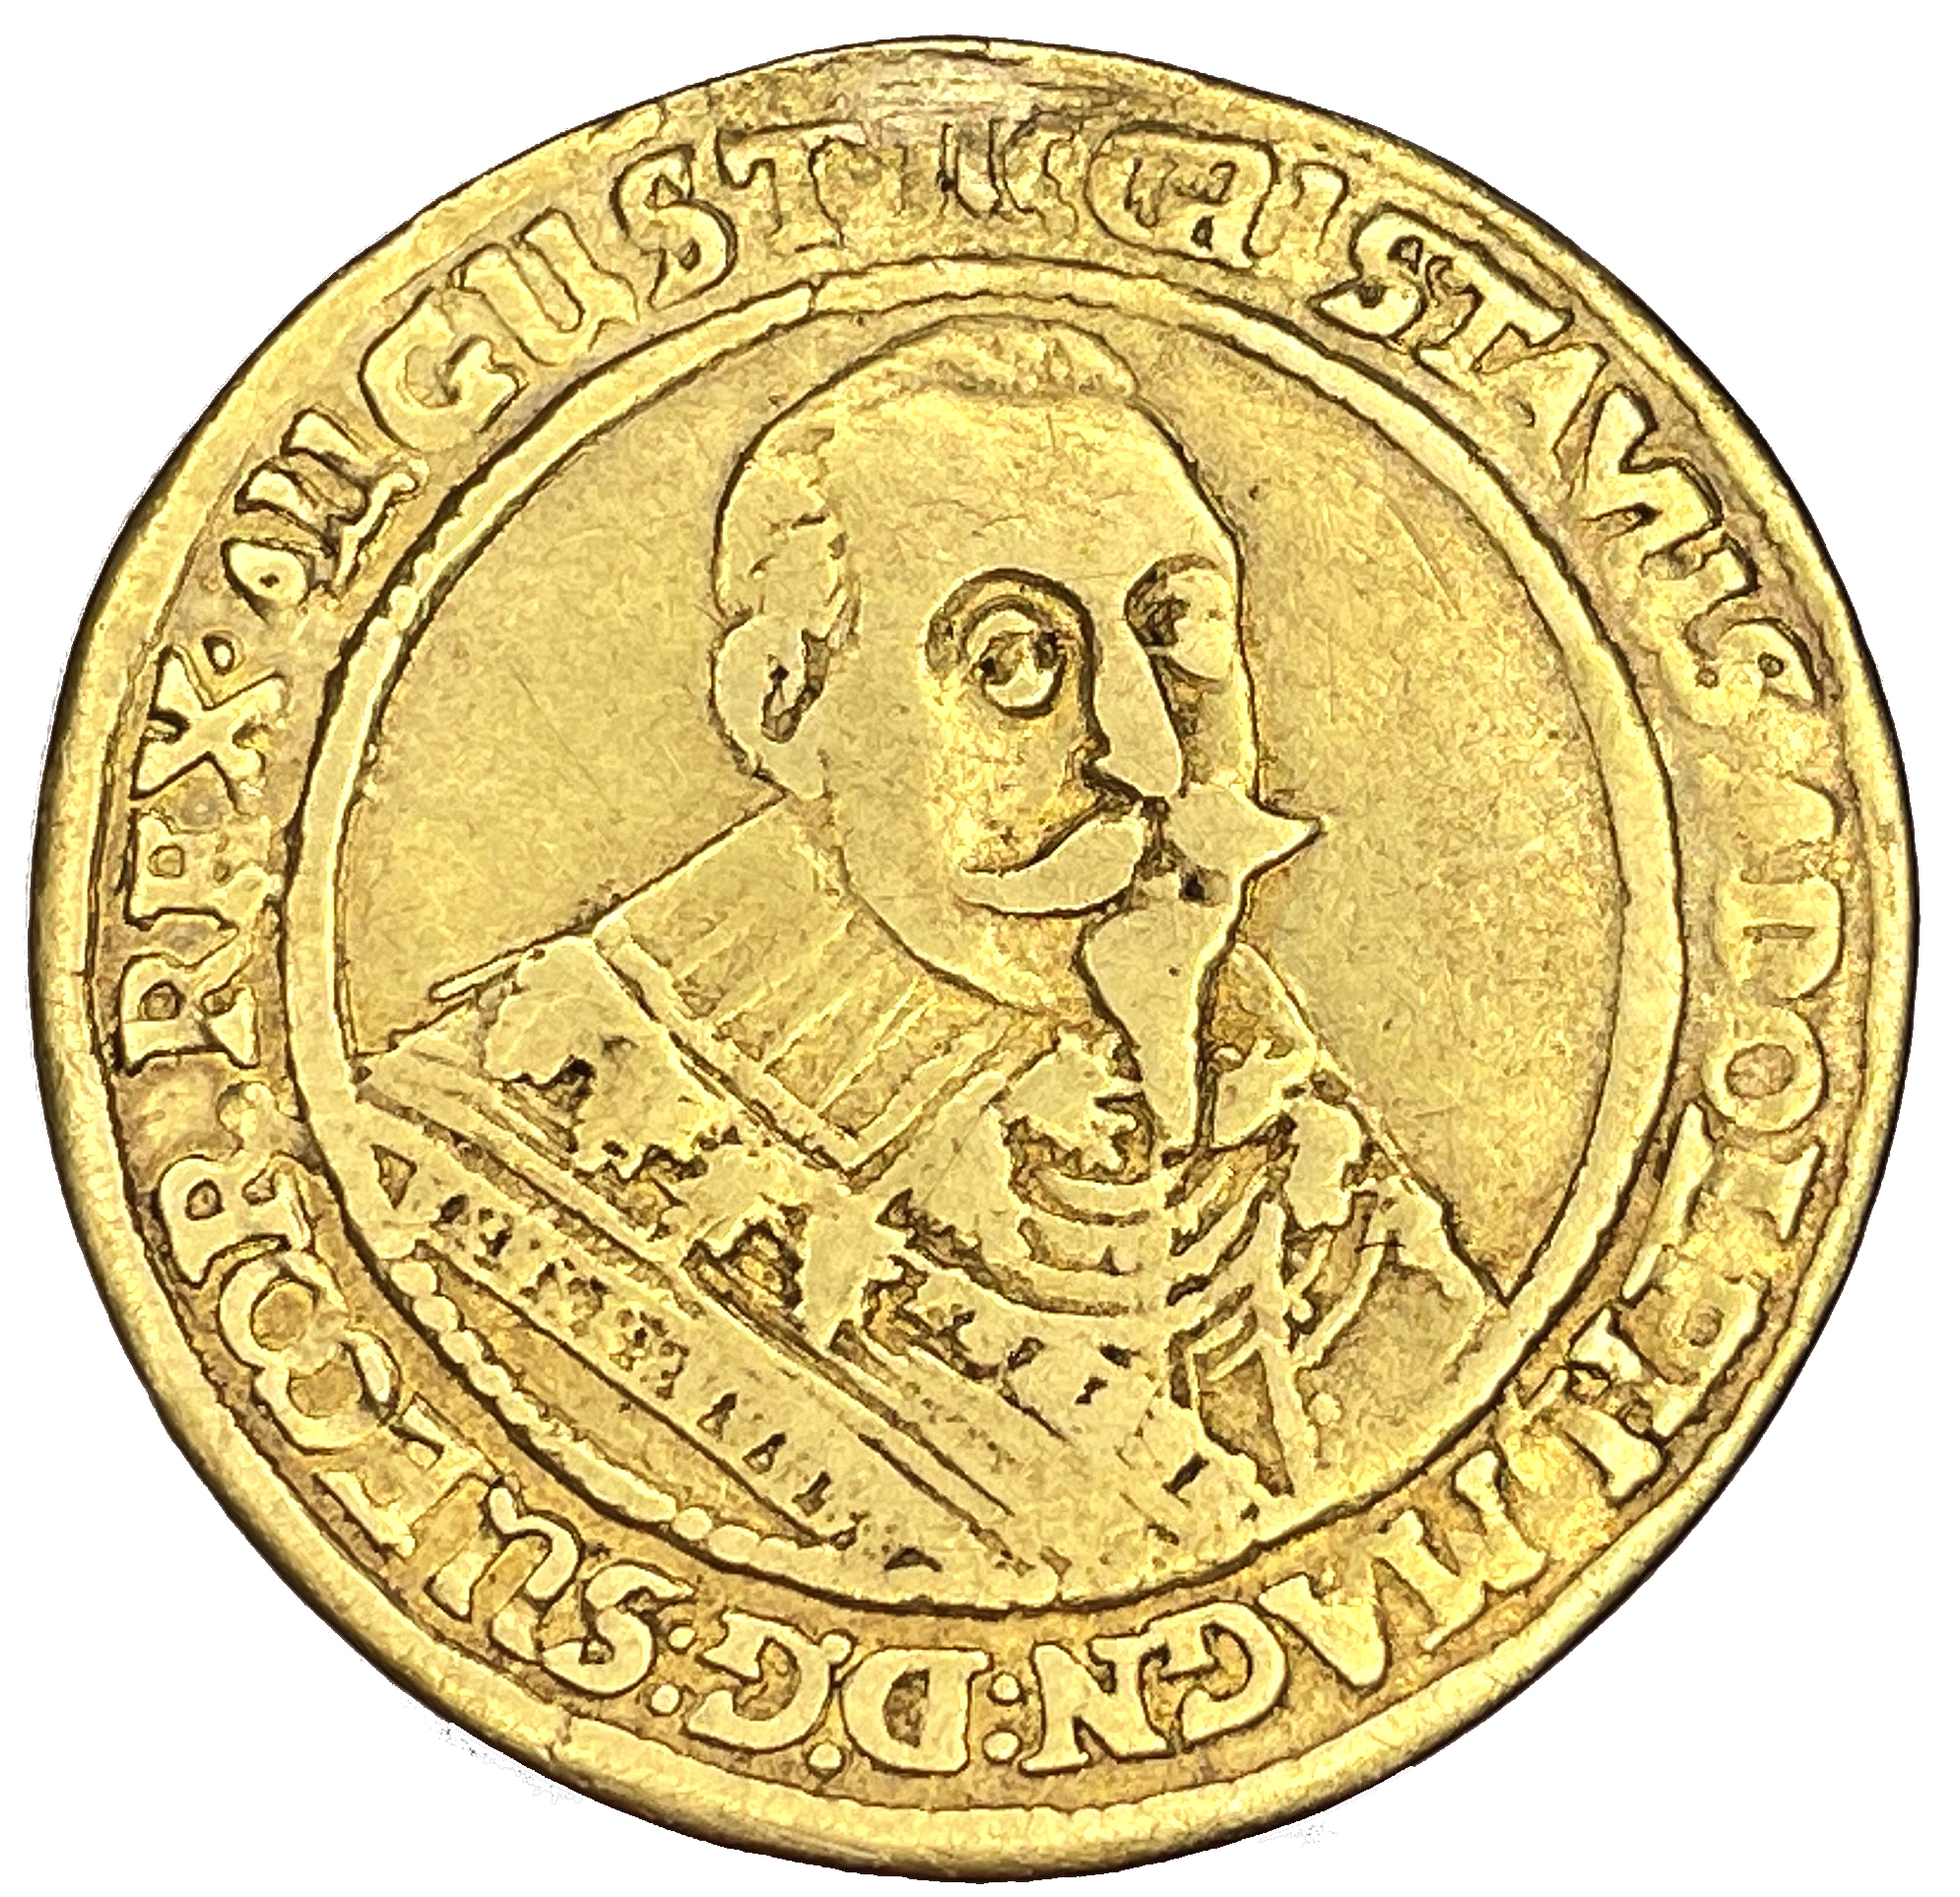 Gustav II Adolf - GULDMYNT - 2 dukater - kastmynt till konungens begravning 1634 - Ex. Svensson - troligtvis UNIK i privat ägo